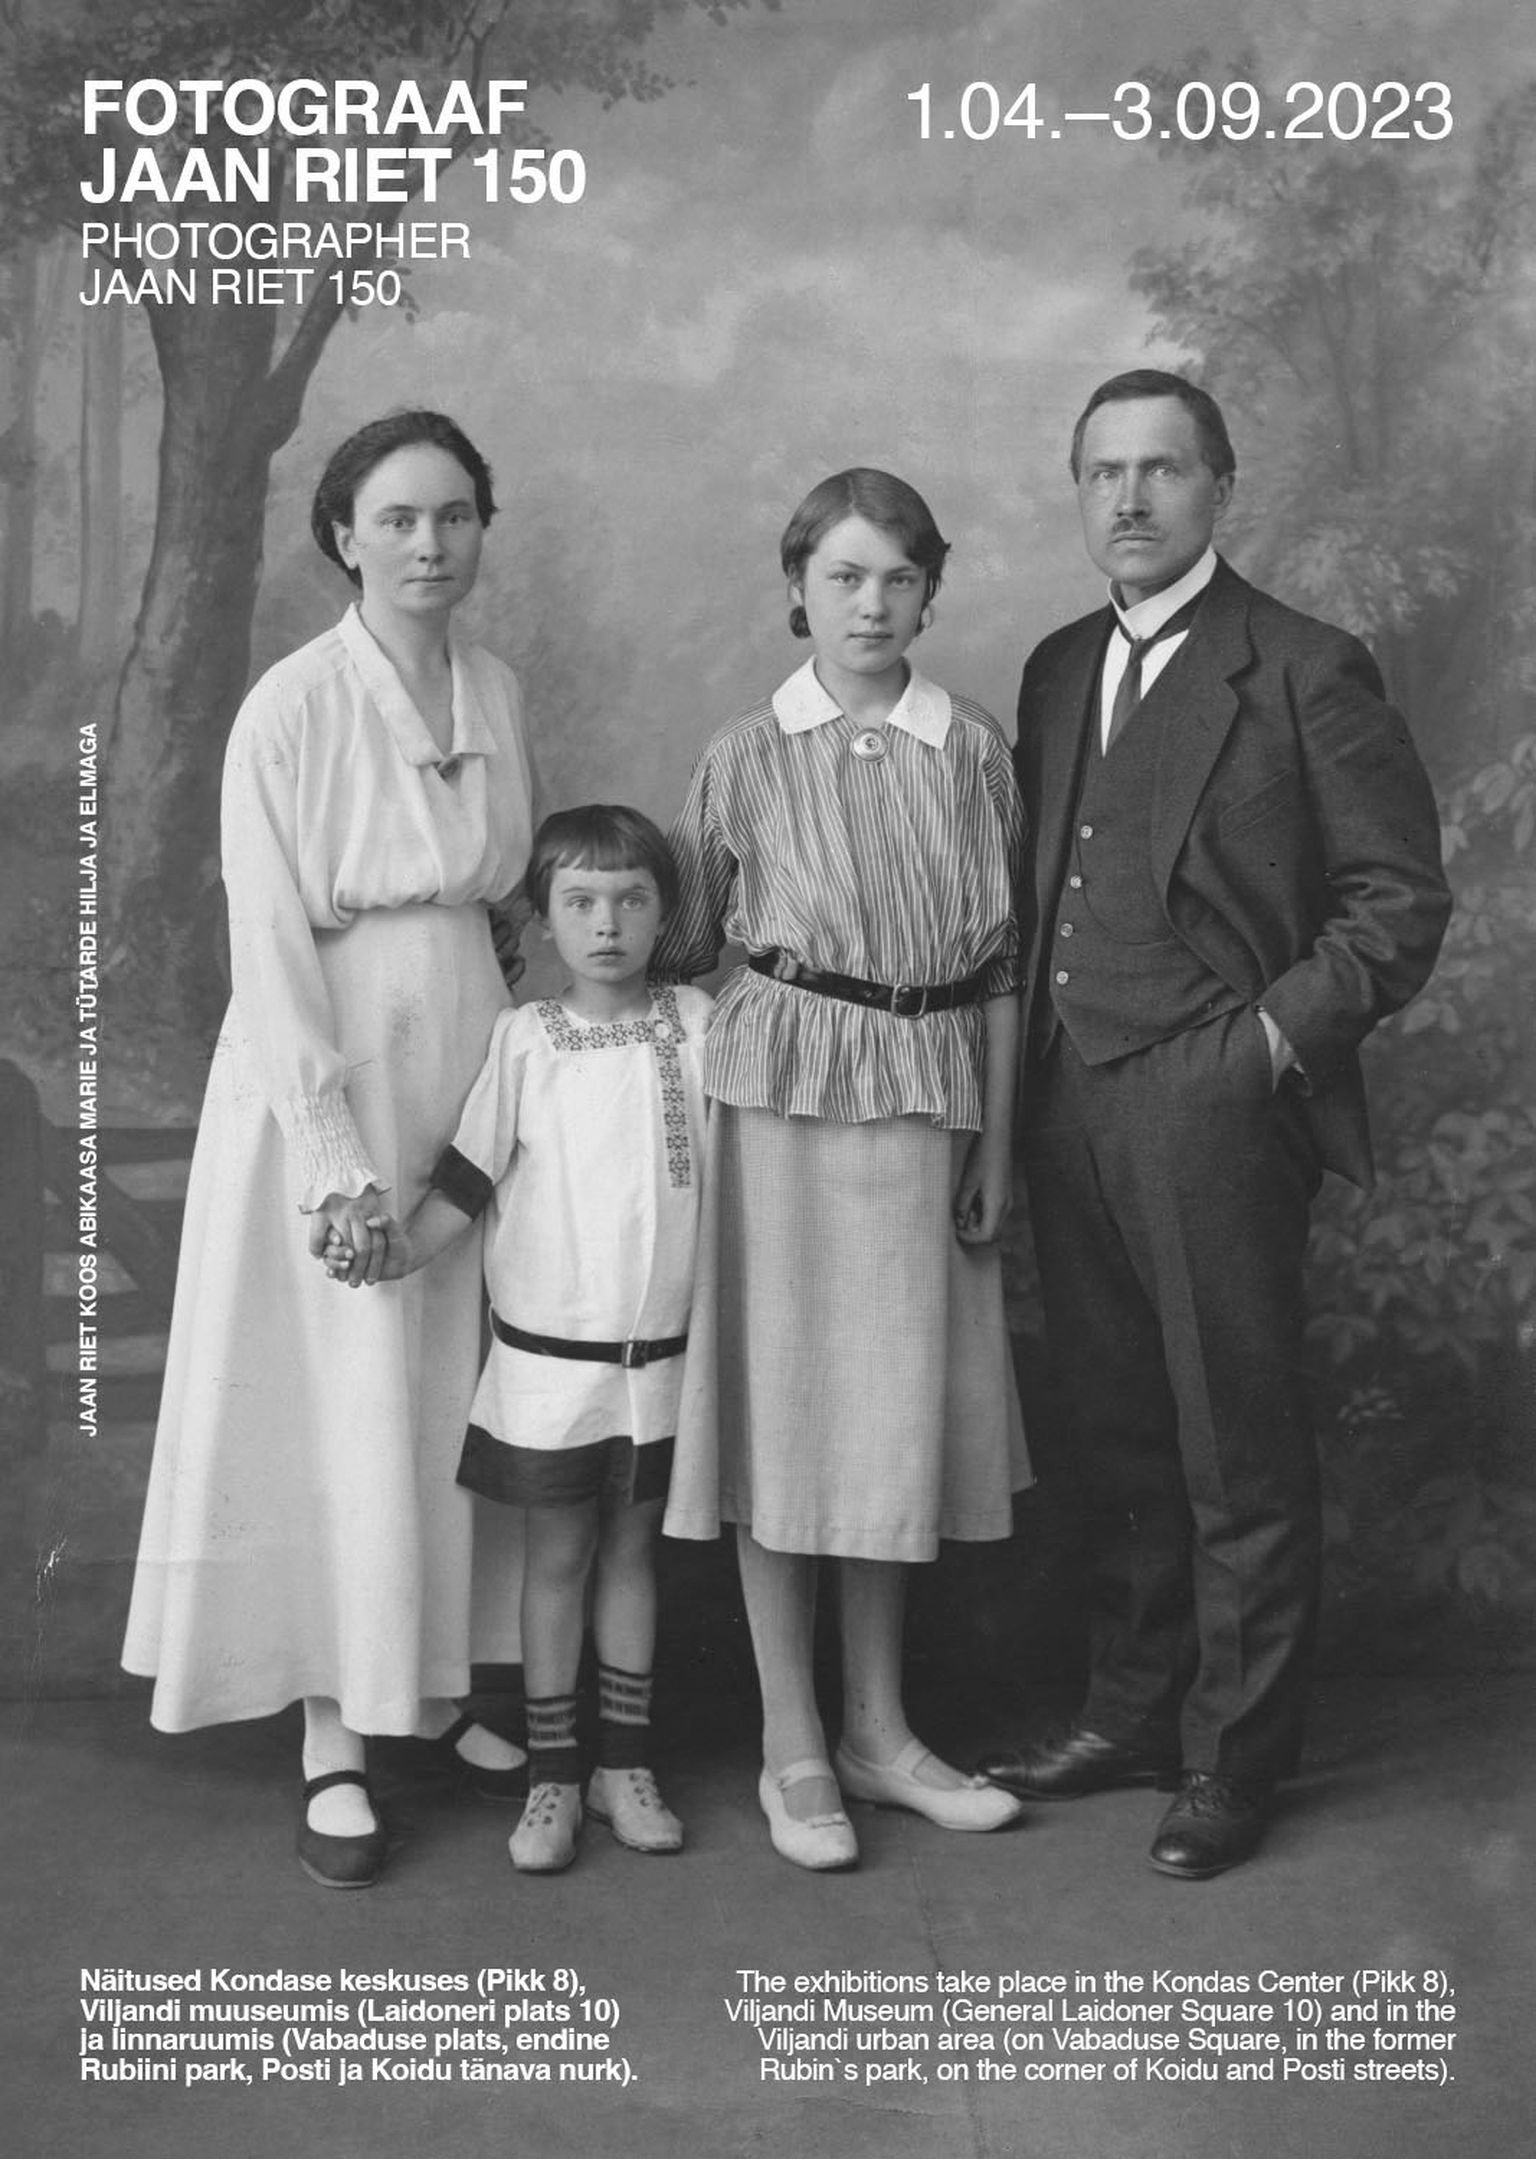 Plakati fotol on Marie, Elma, Hilja ja Jaan Riet koduateljees 1917. aastal.
Viljandi muuseumi fotokogu, VMF 439:41.